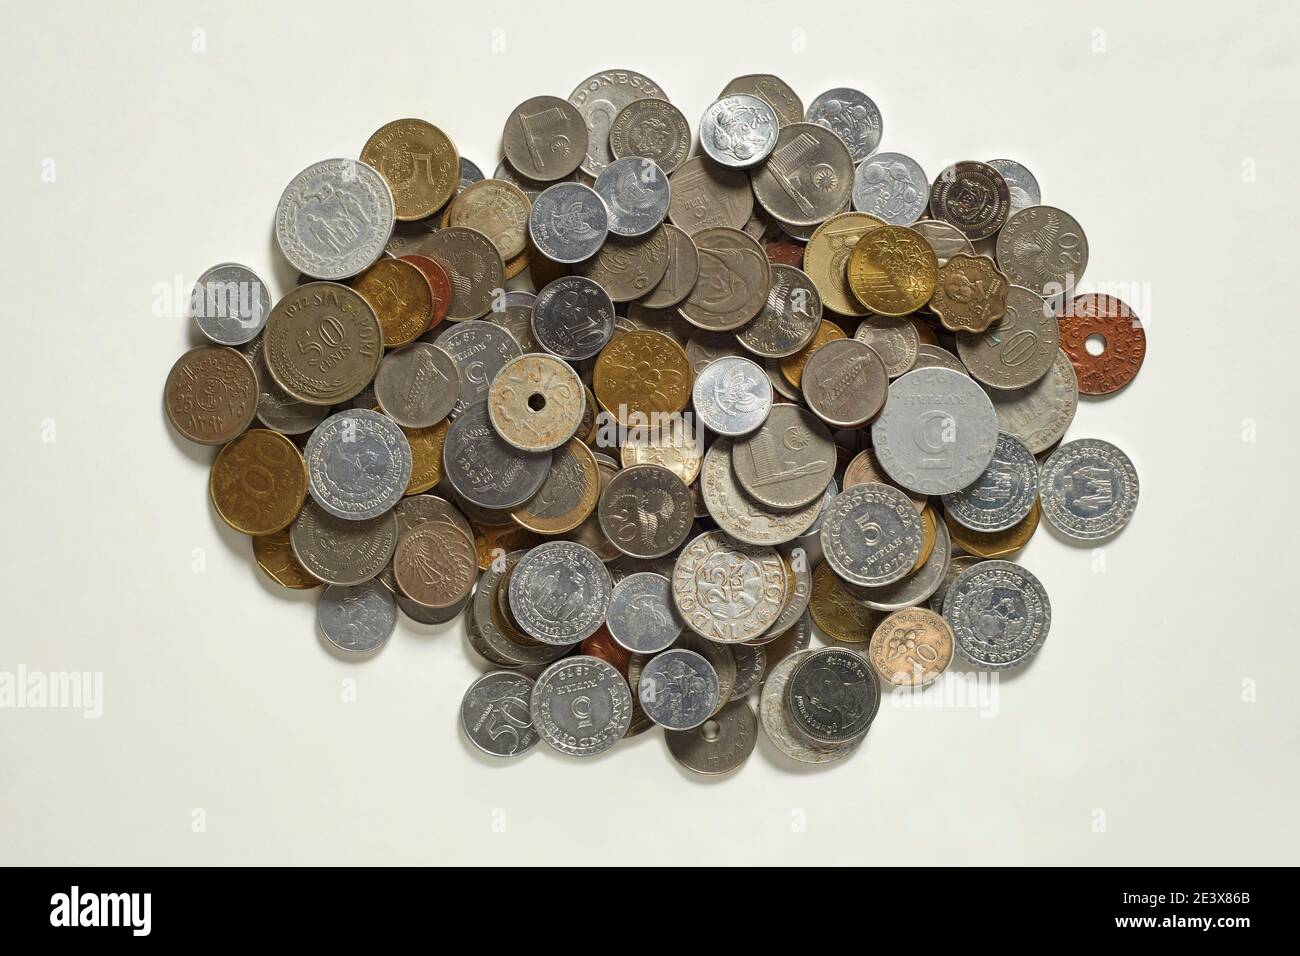 Eine Sammlung von Münzen mit verschiedenen Designs aus verschiedenen Ländern In der Welt Stockfoto